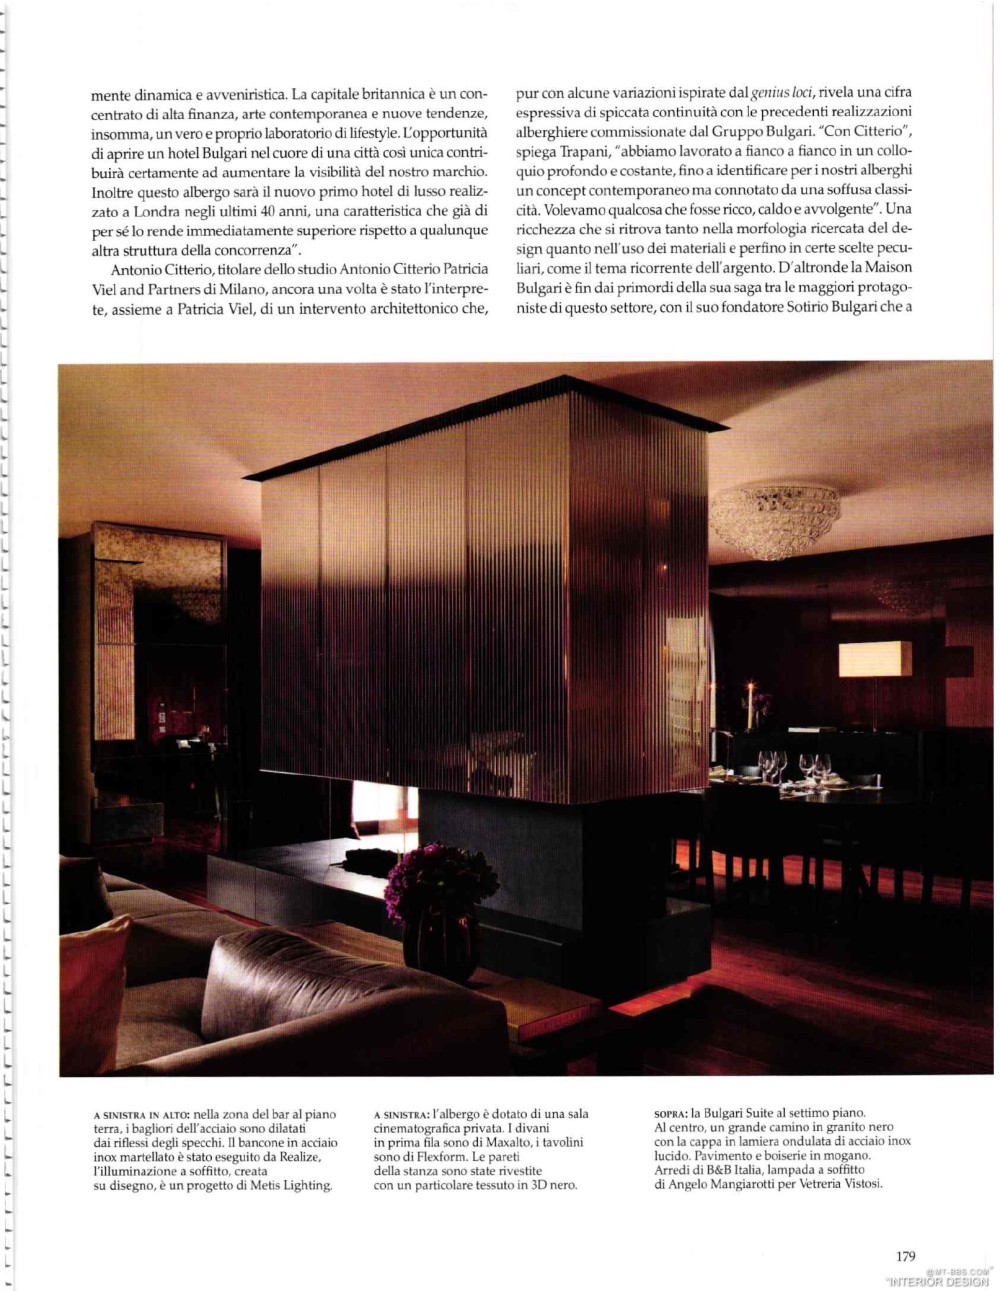 意大利AD 杂志 2012年全年JPG高清版本 全免（上传完毕）_0181.jpg